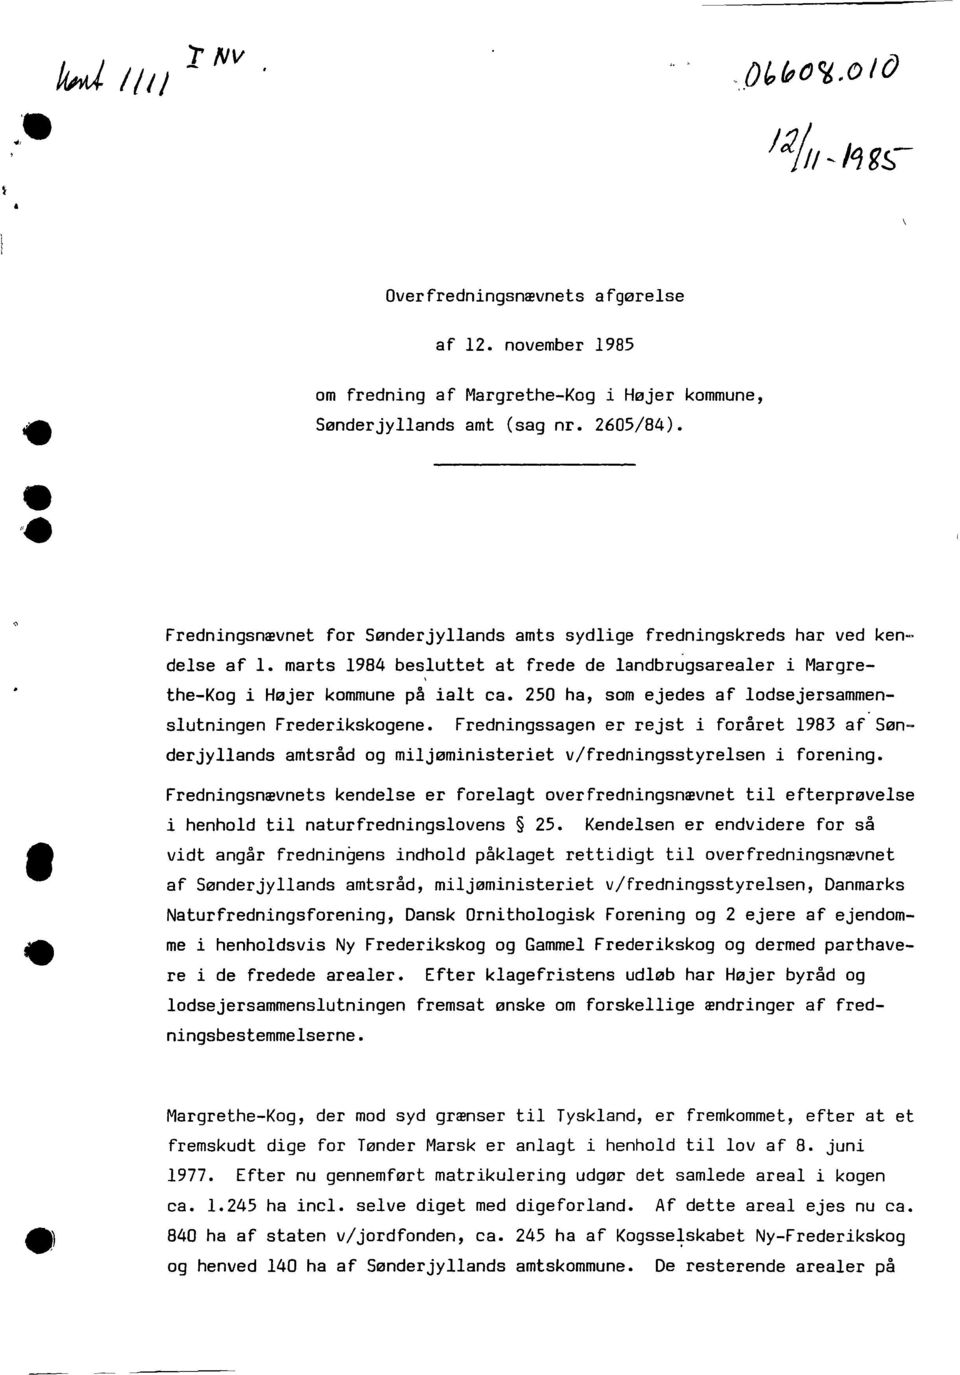 250 ha, som ejedes af lodsejersammenslutningen Frederikskogene. Fredningssagen er rejst i foråret 1983 af Sønderjyllands amtsråd og miljøministeriet v/fredningsstyrelsen i forening.